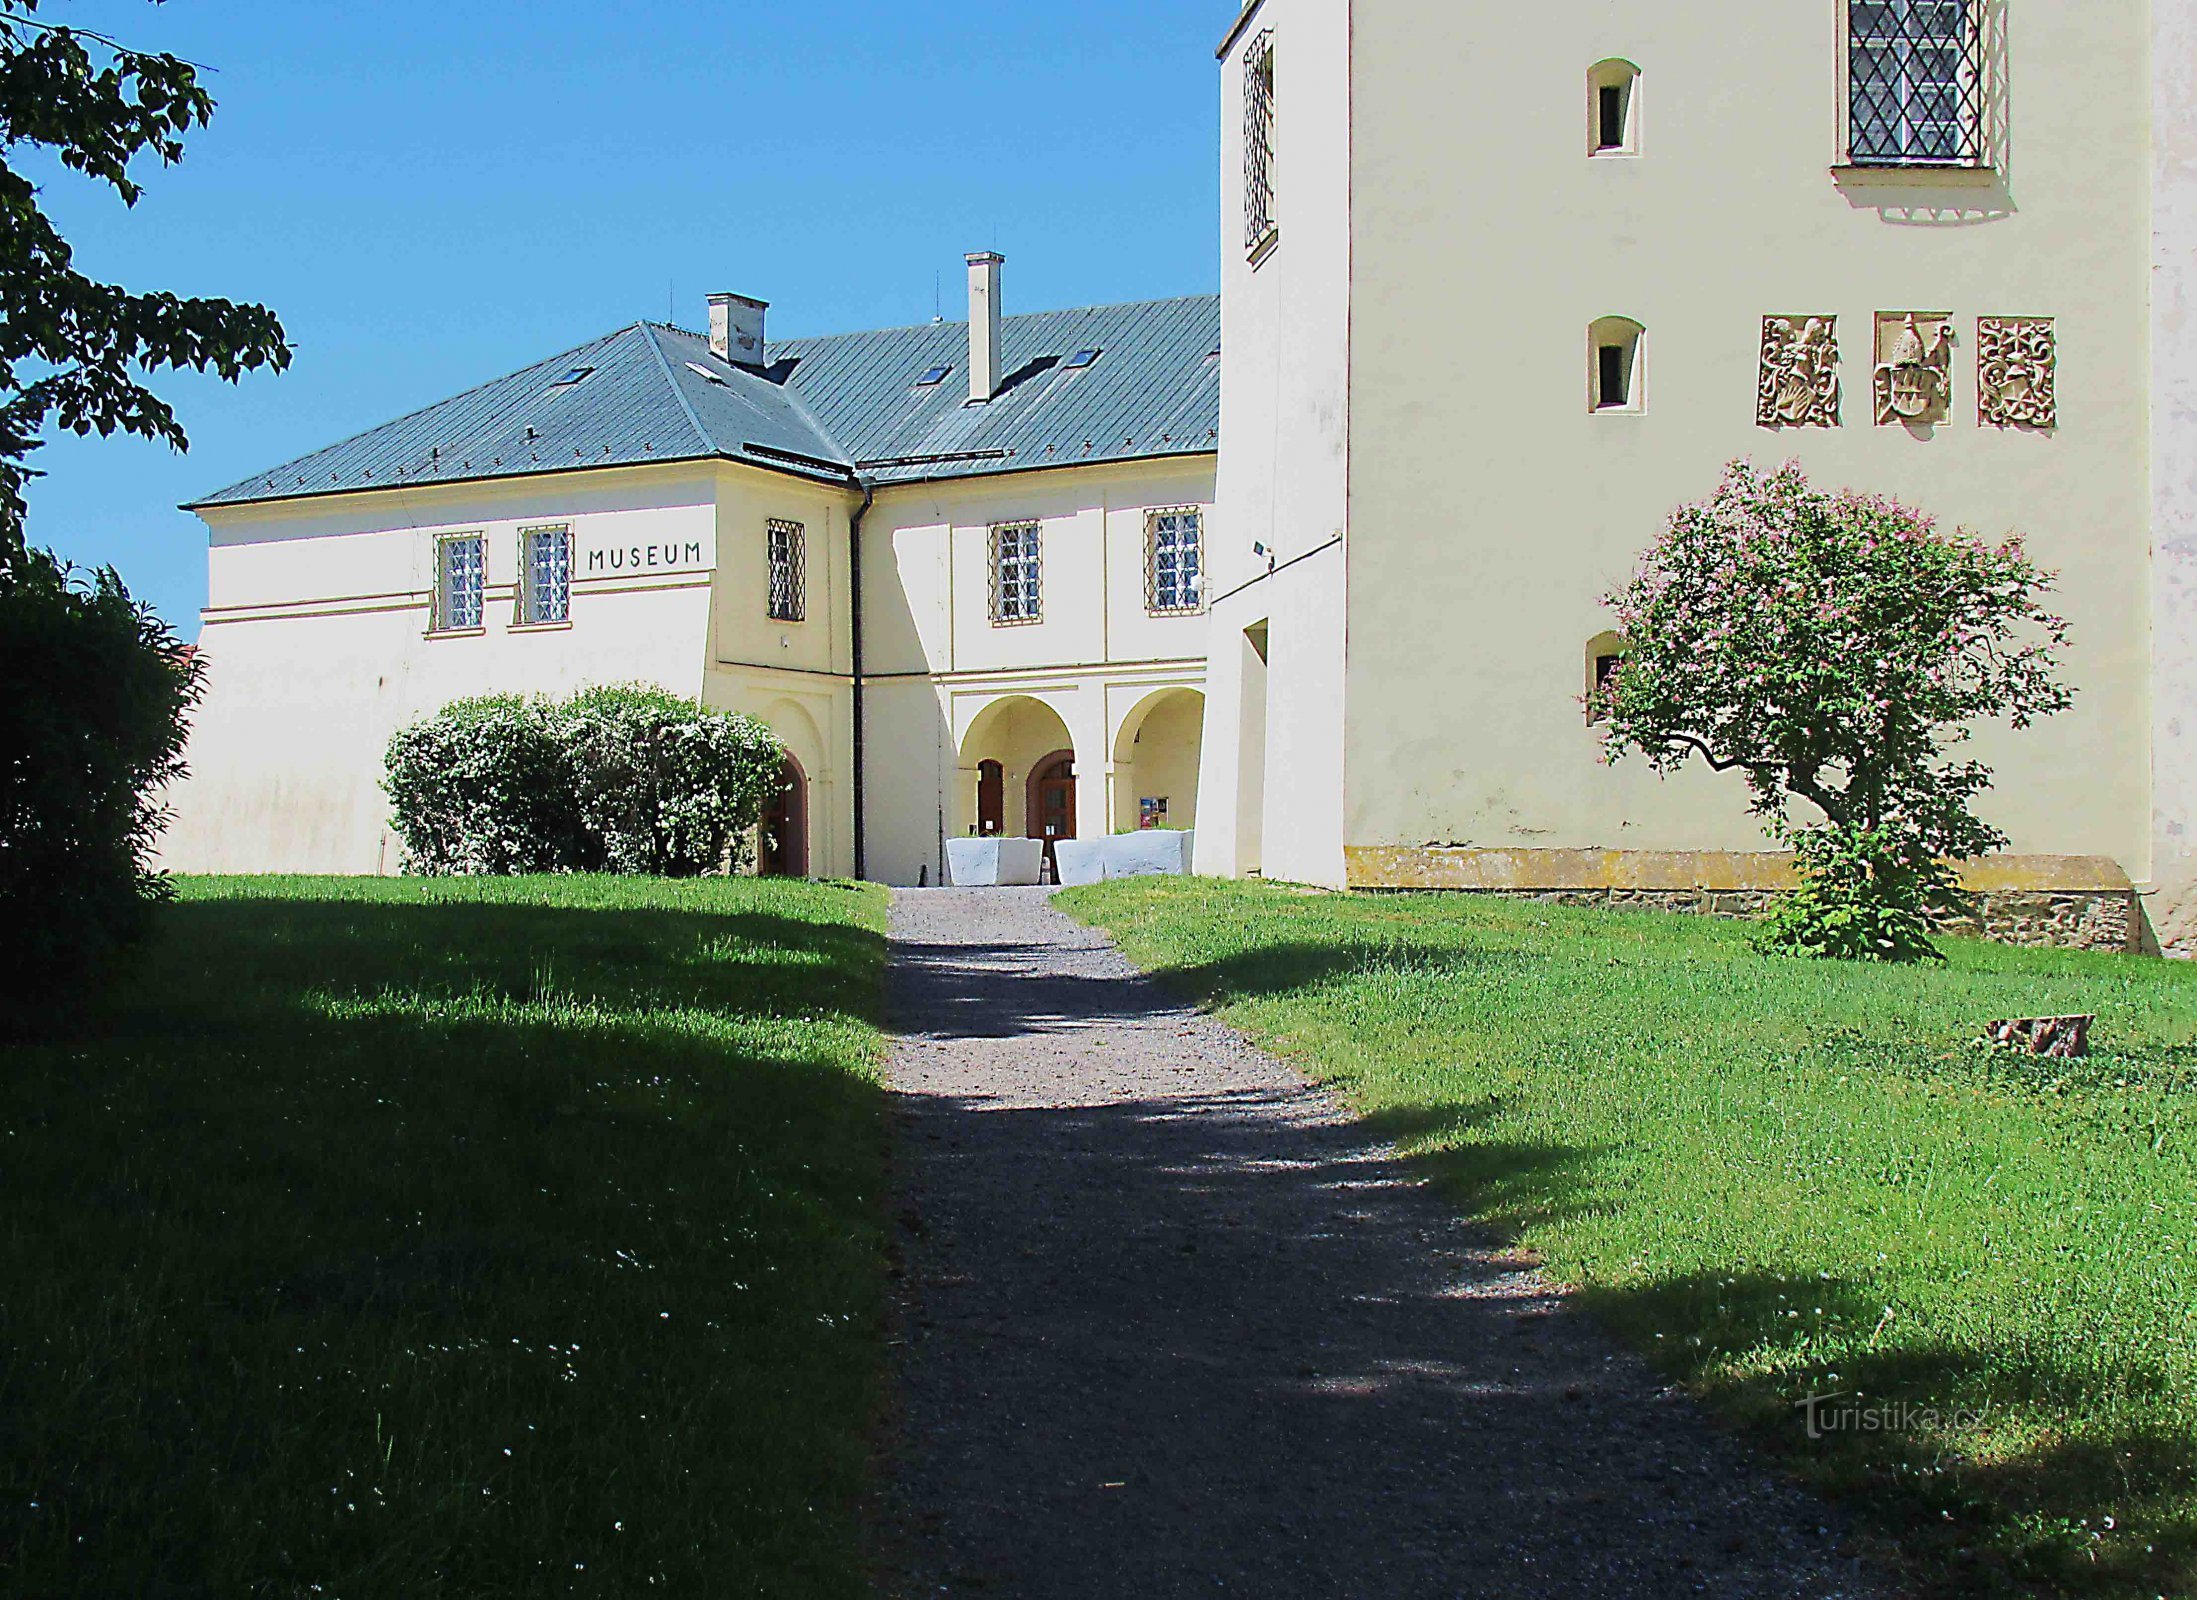 Bảo tàng Vyškovska trong khuôn viên của lâu đài